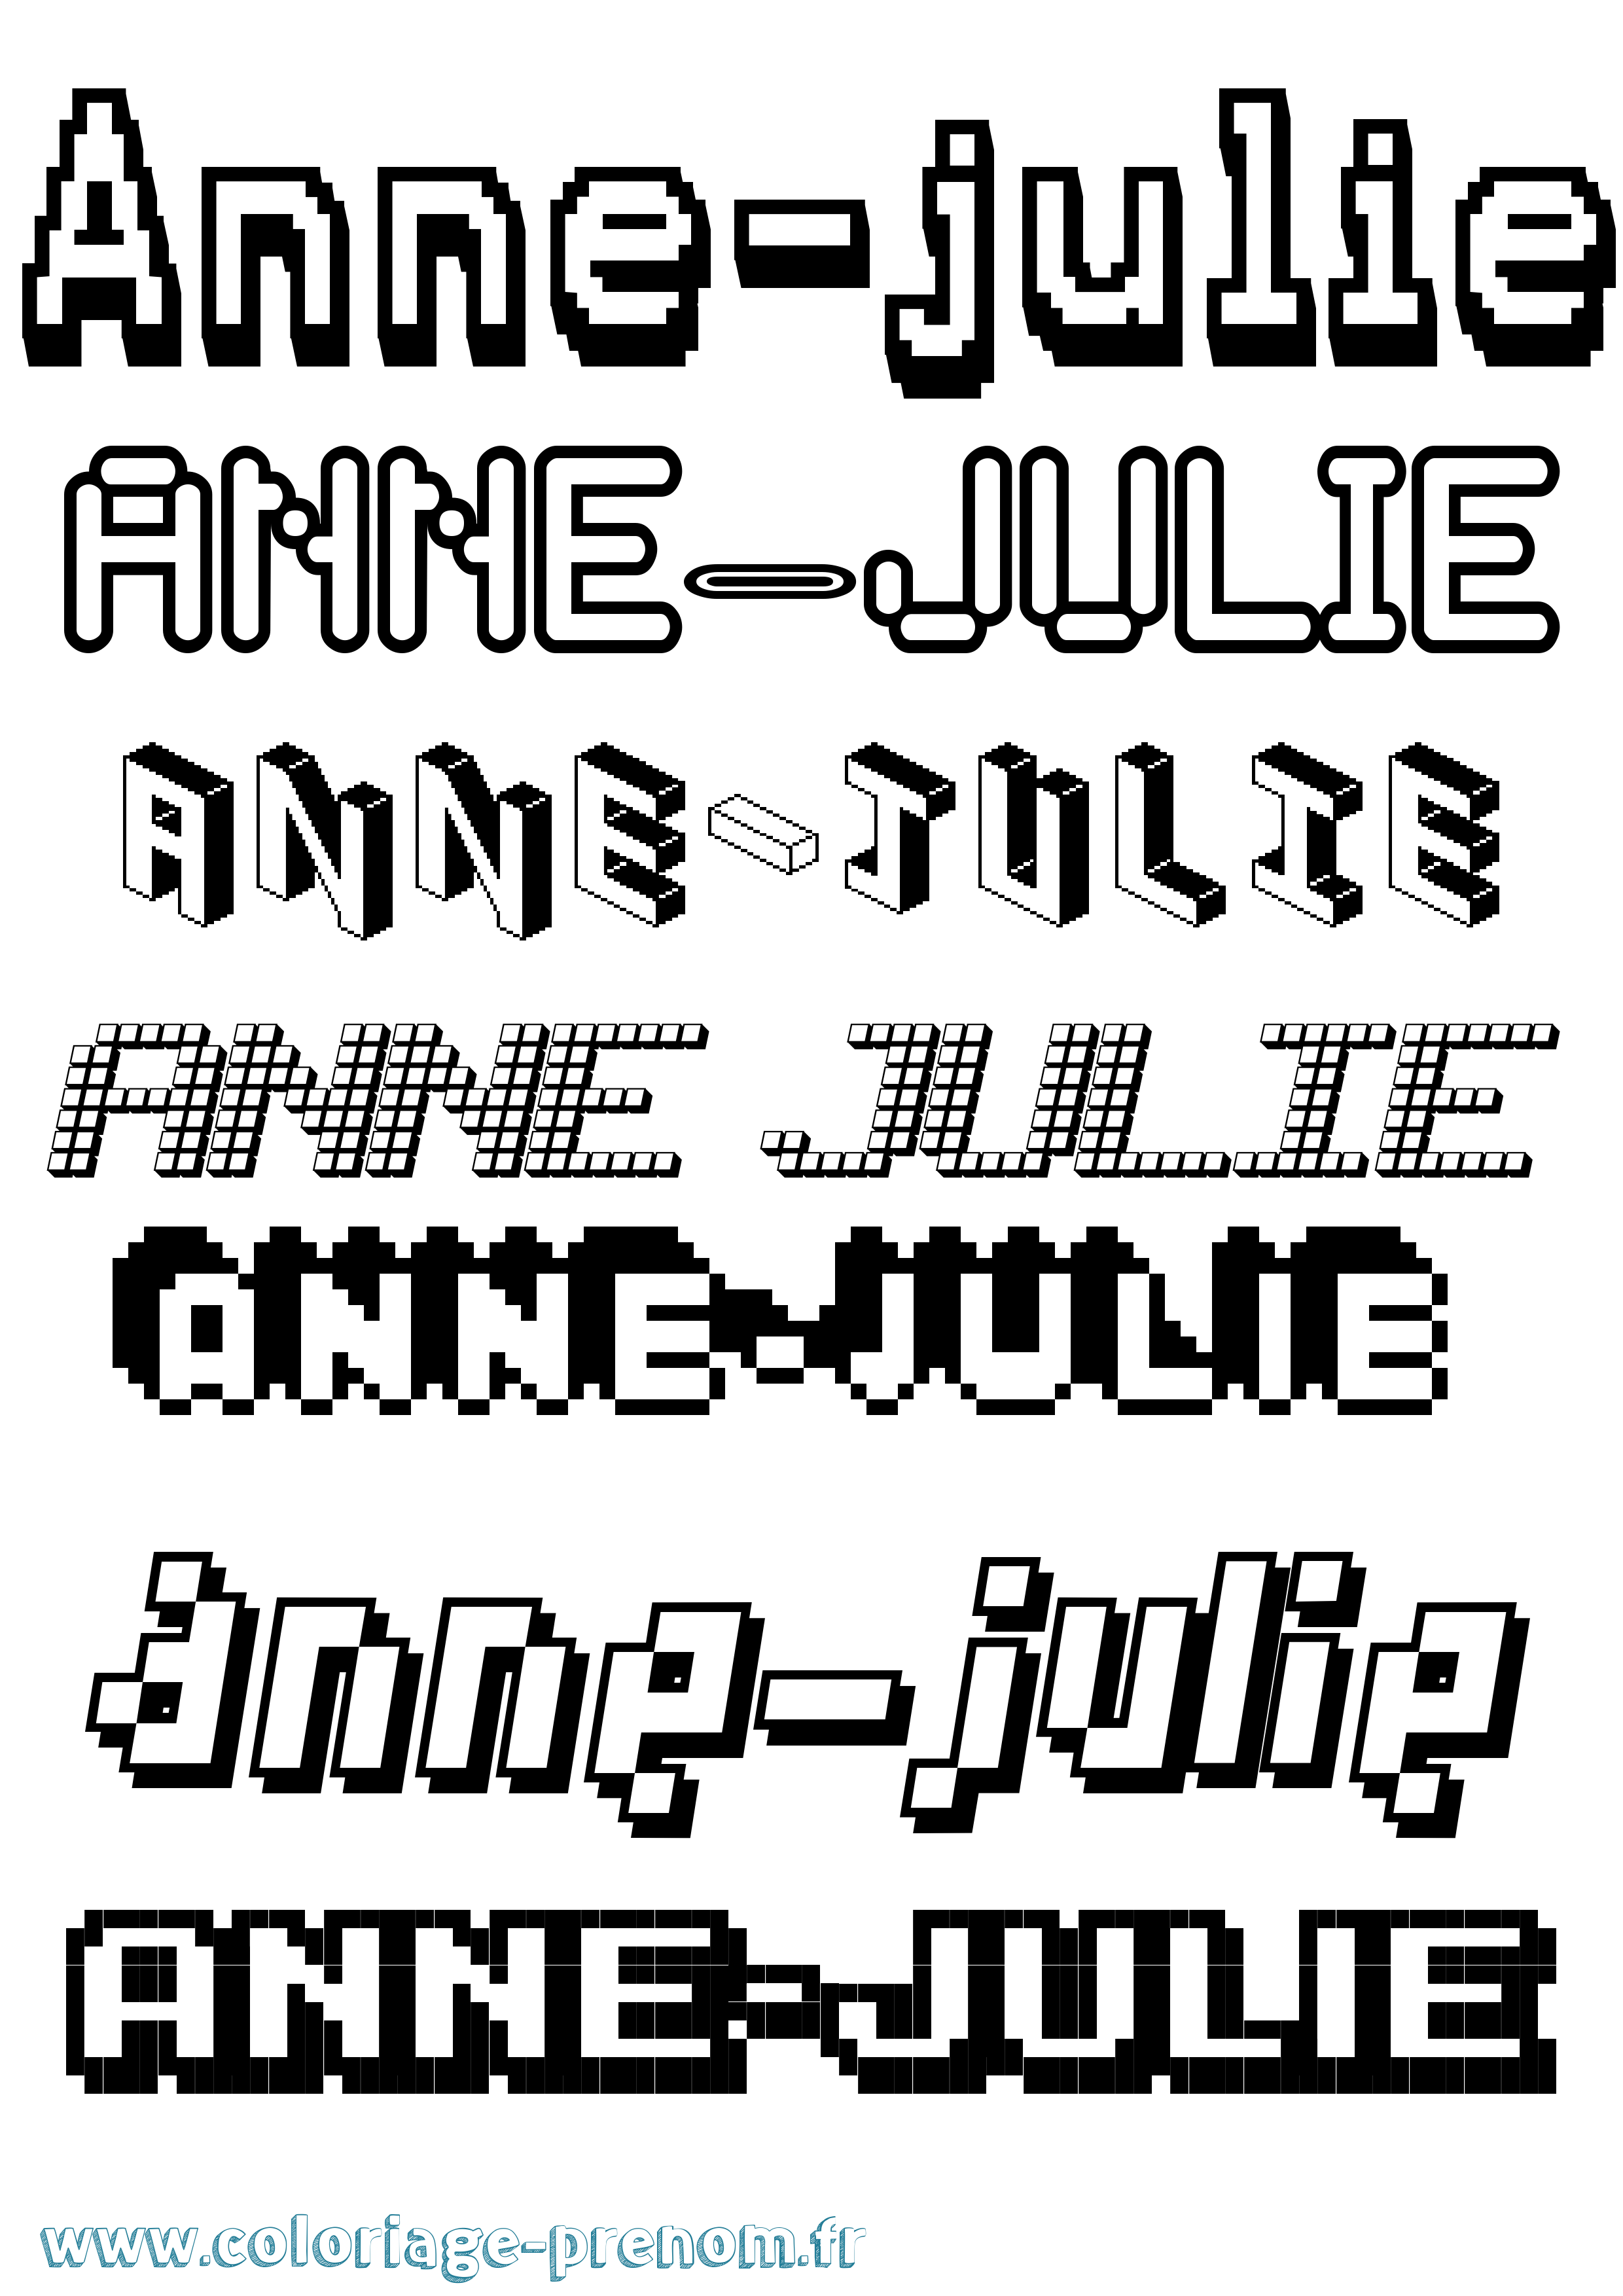 Coloriage prénom Anne-Julie Pixel